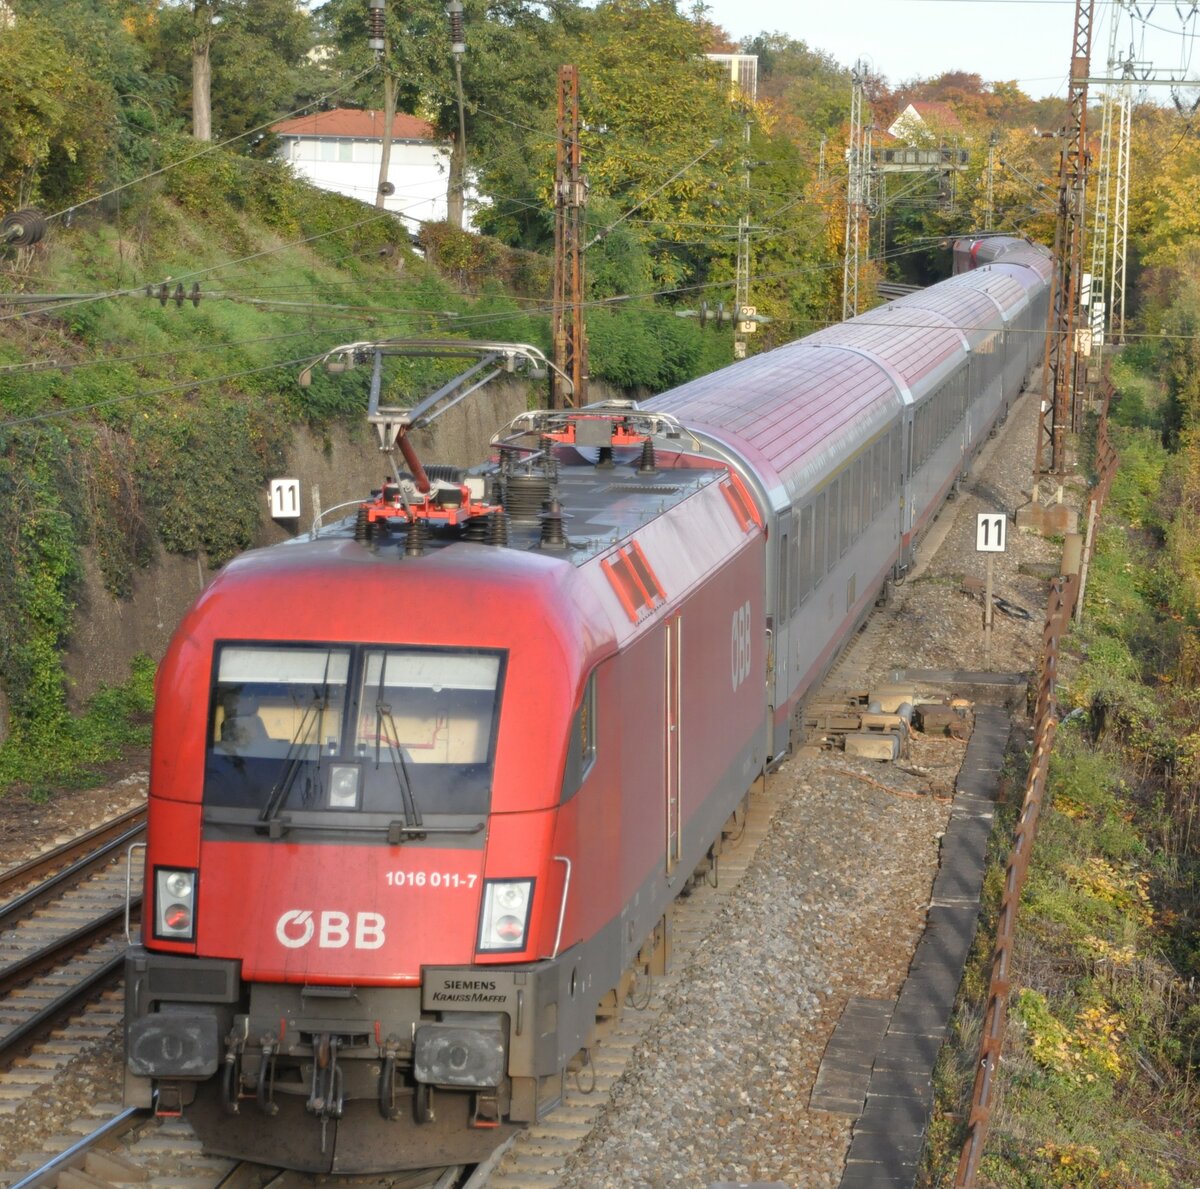 ÖBB 1016 011-7 Schub für ÖBB EC in Ulm am 18.10.2012.